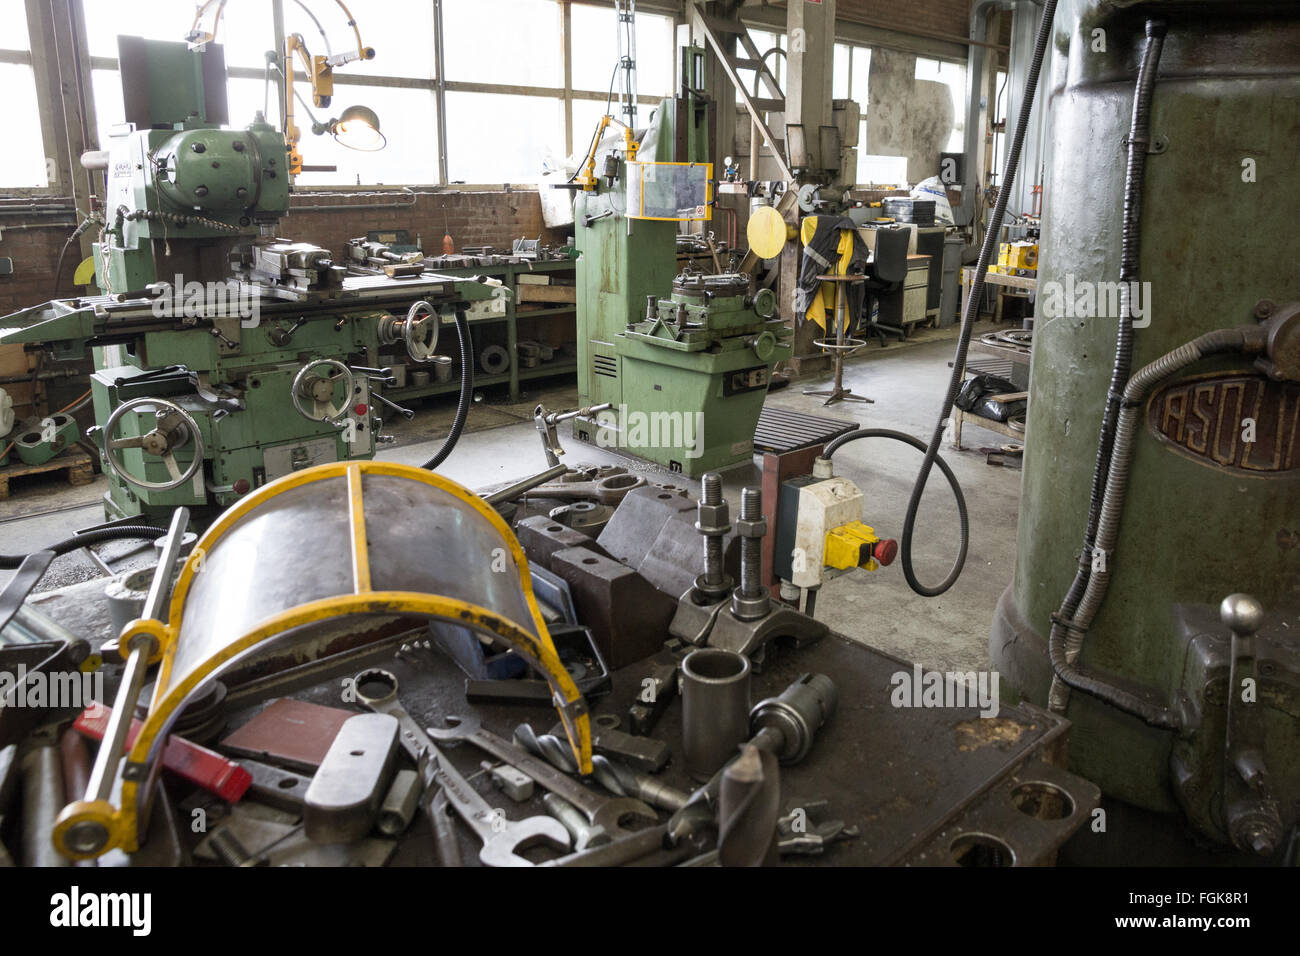 Les outils et l'équipement dans une usine industrielle Banque D'Images